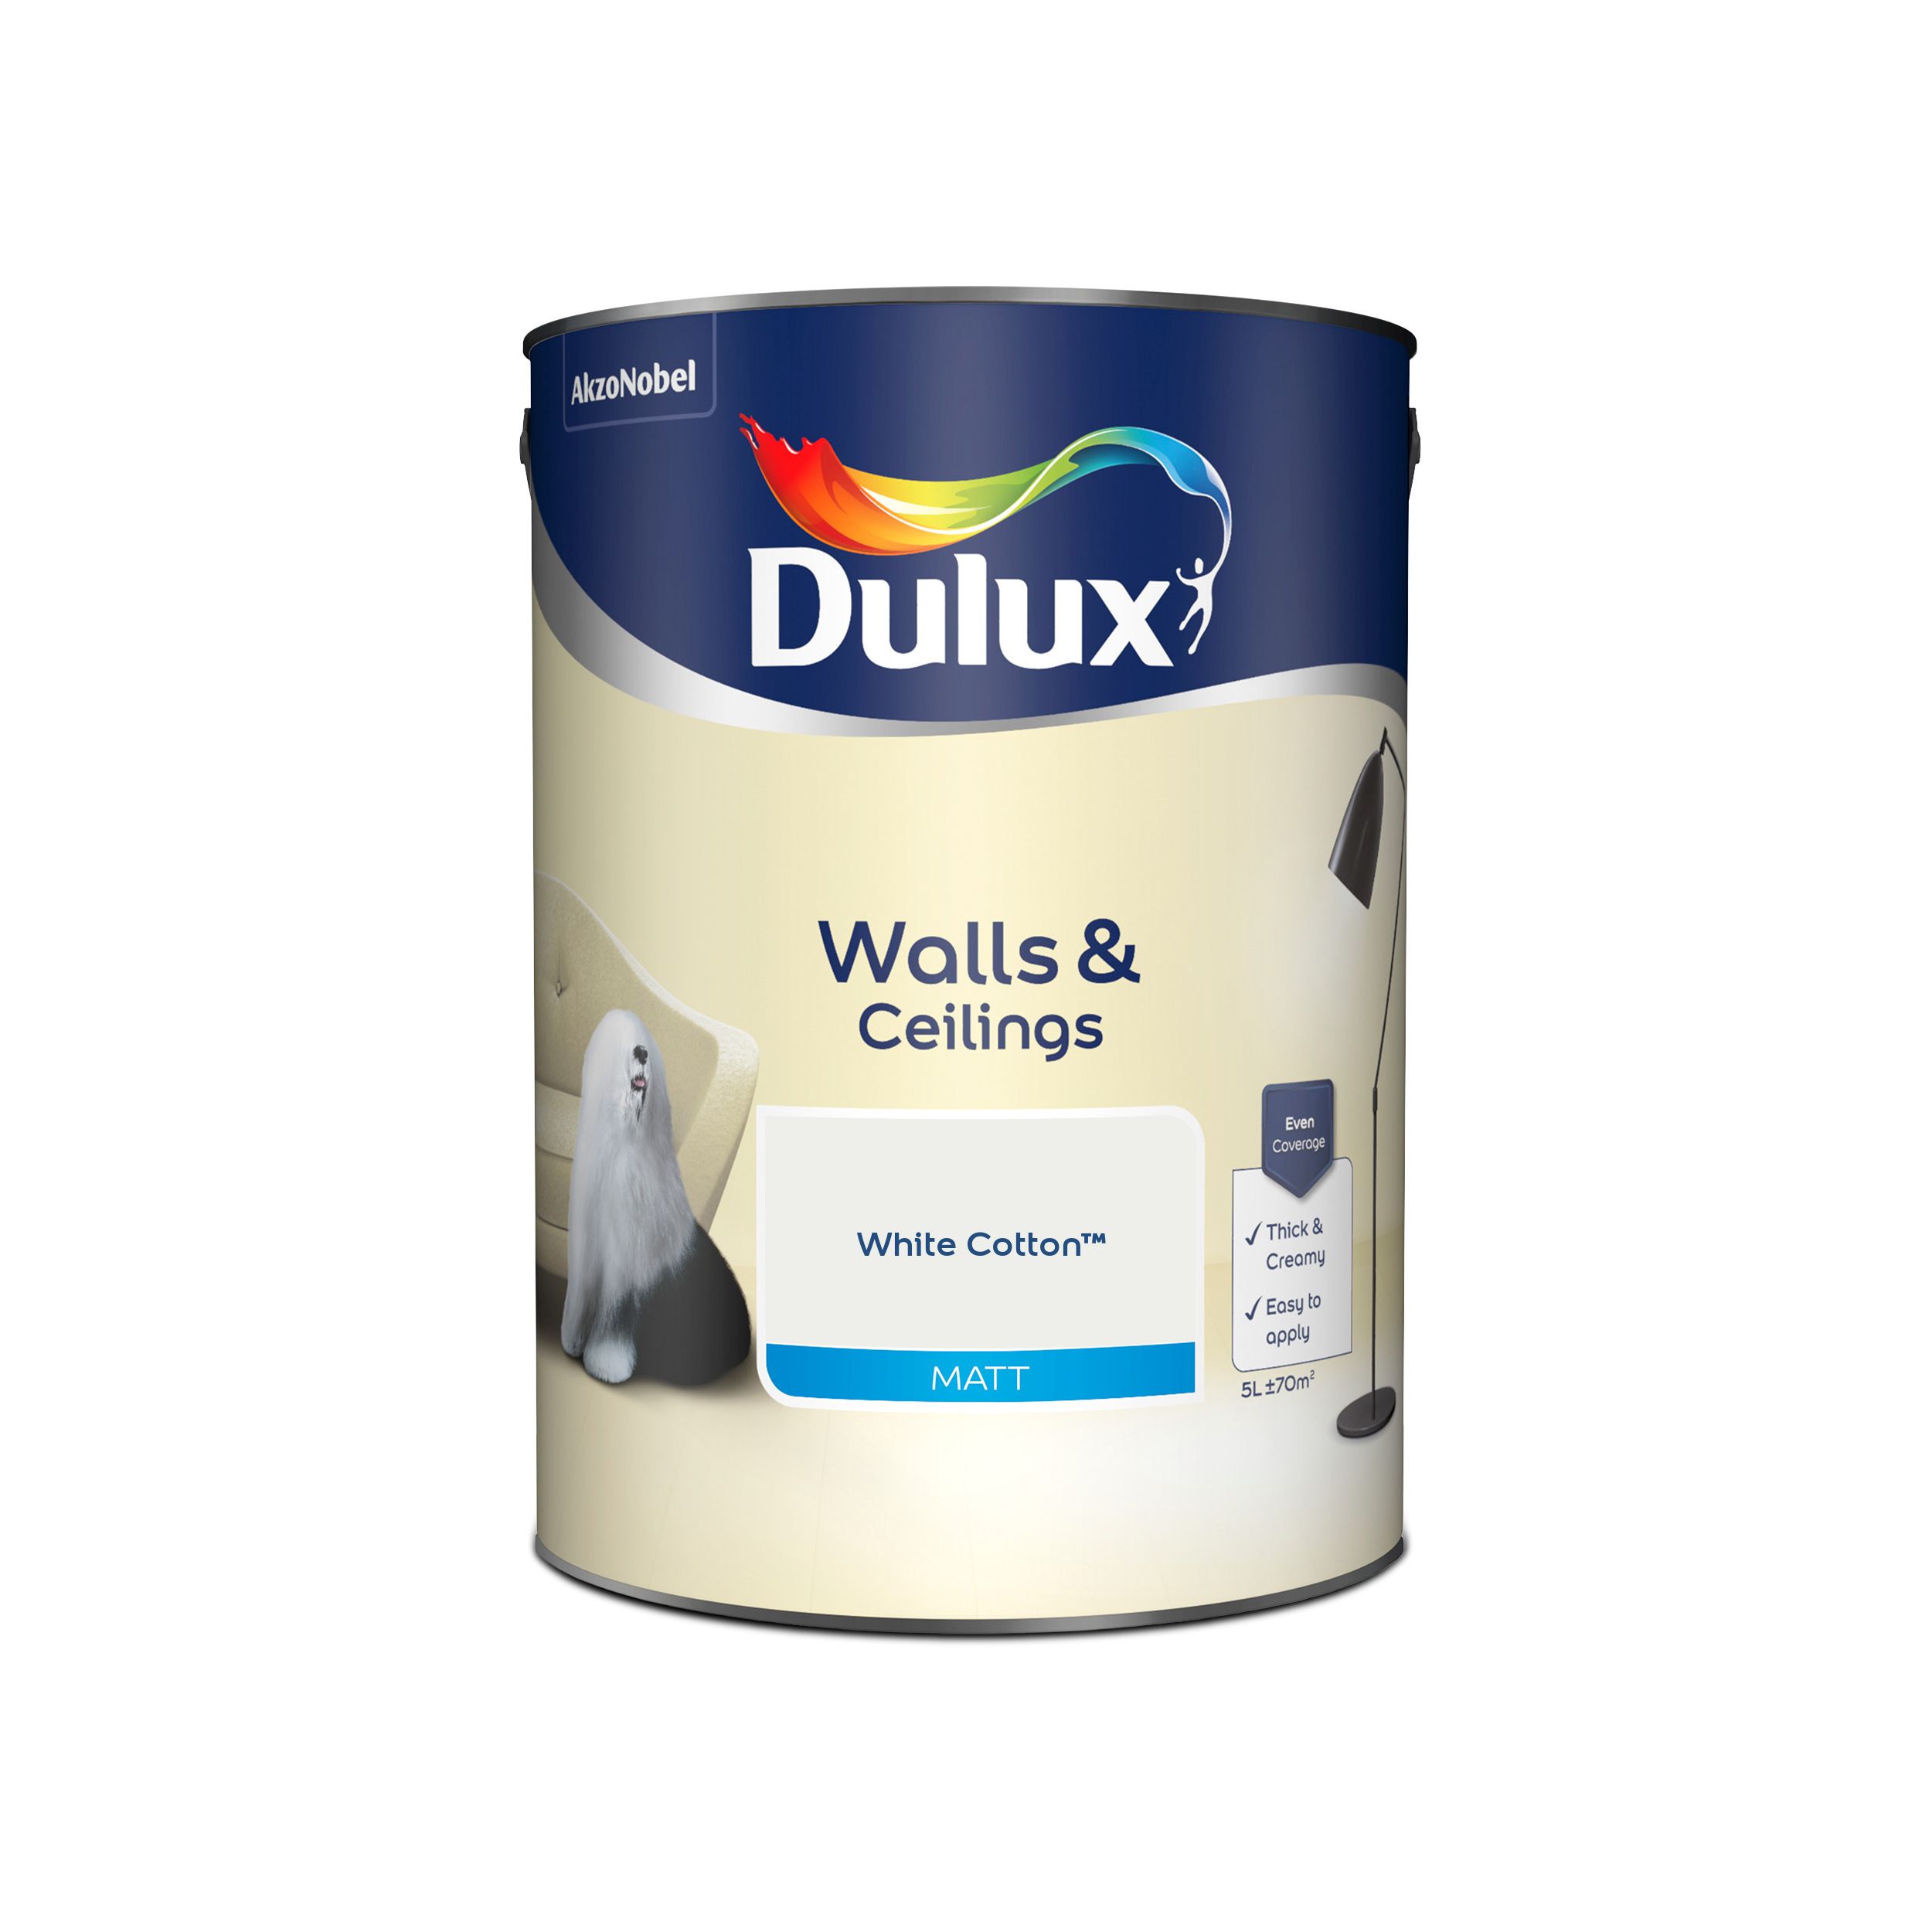 Dulux Walls & ceilings White cotton Matt Emulsion paint, 5L